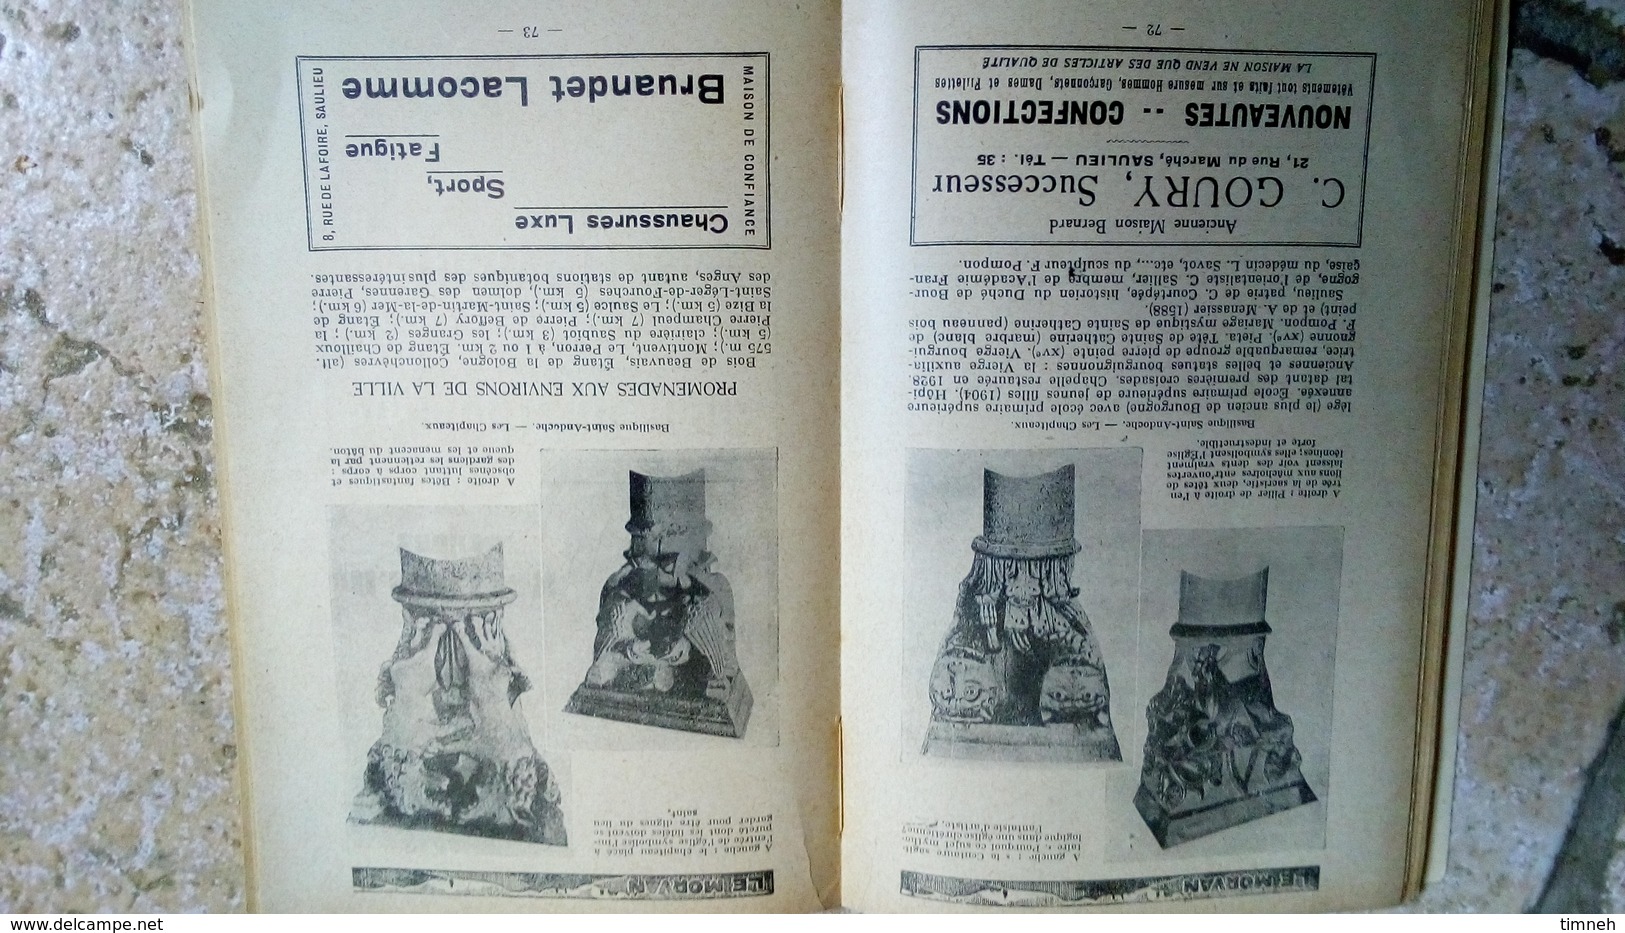 LE MORVAN 1933 TOURISTIQUE ET COMMERCIAL - GUIDE OFFICIEL DU TOURISTE - avec des publicités locales